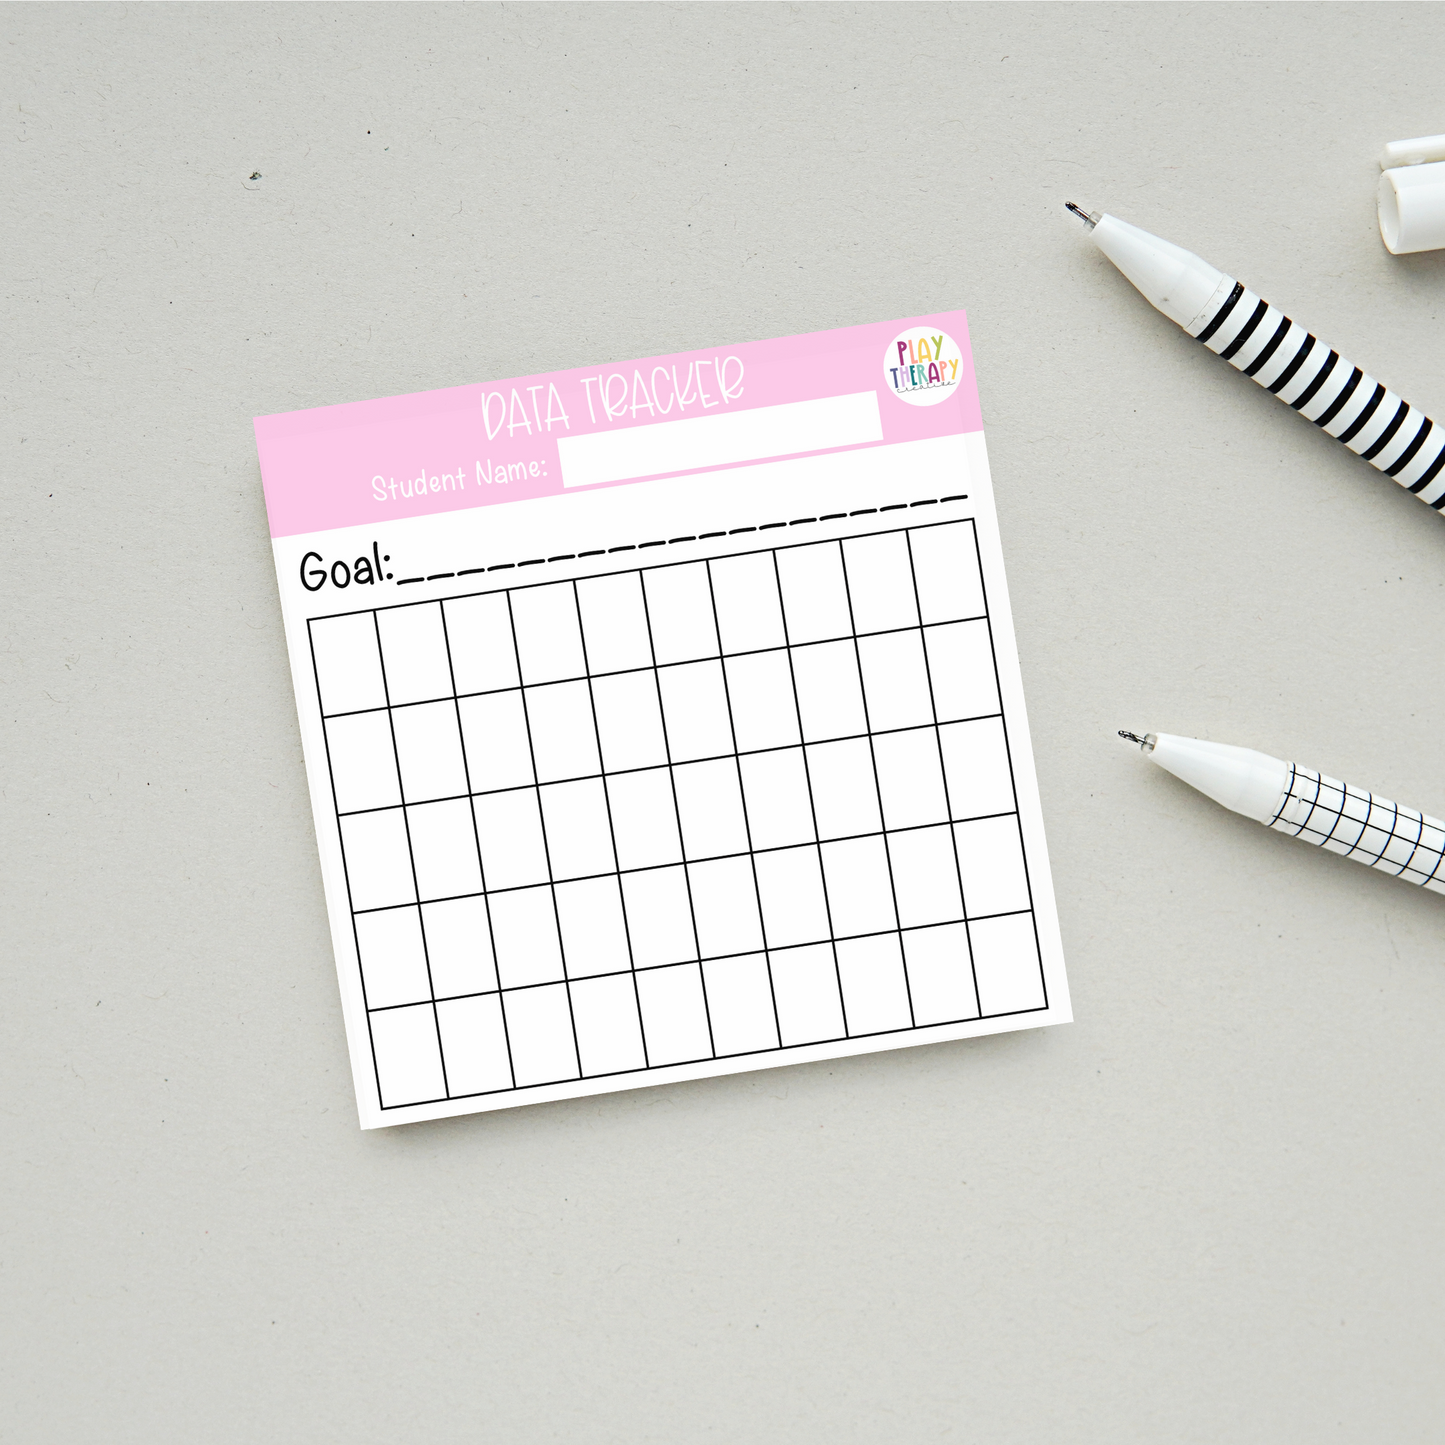 Data Tracker Sticky Notes (Pink)